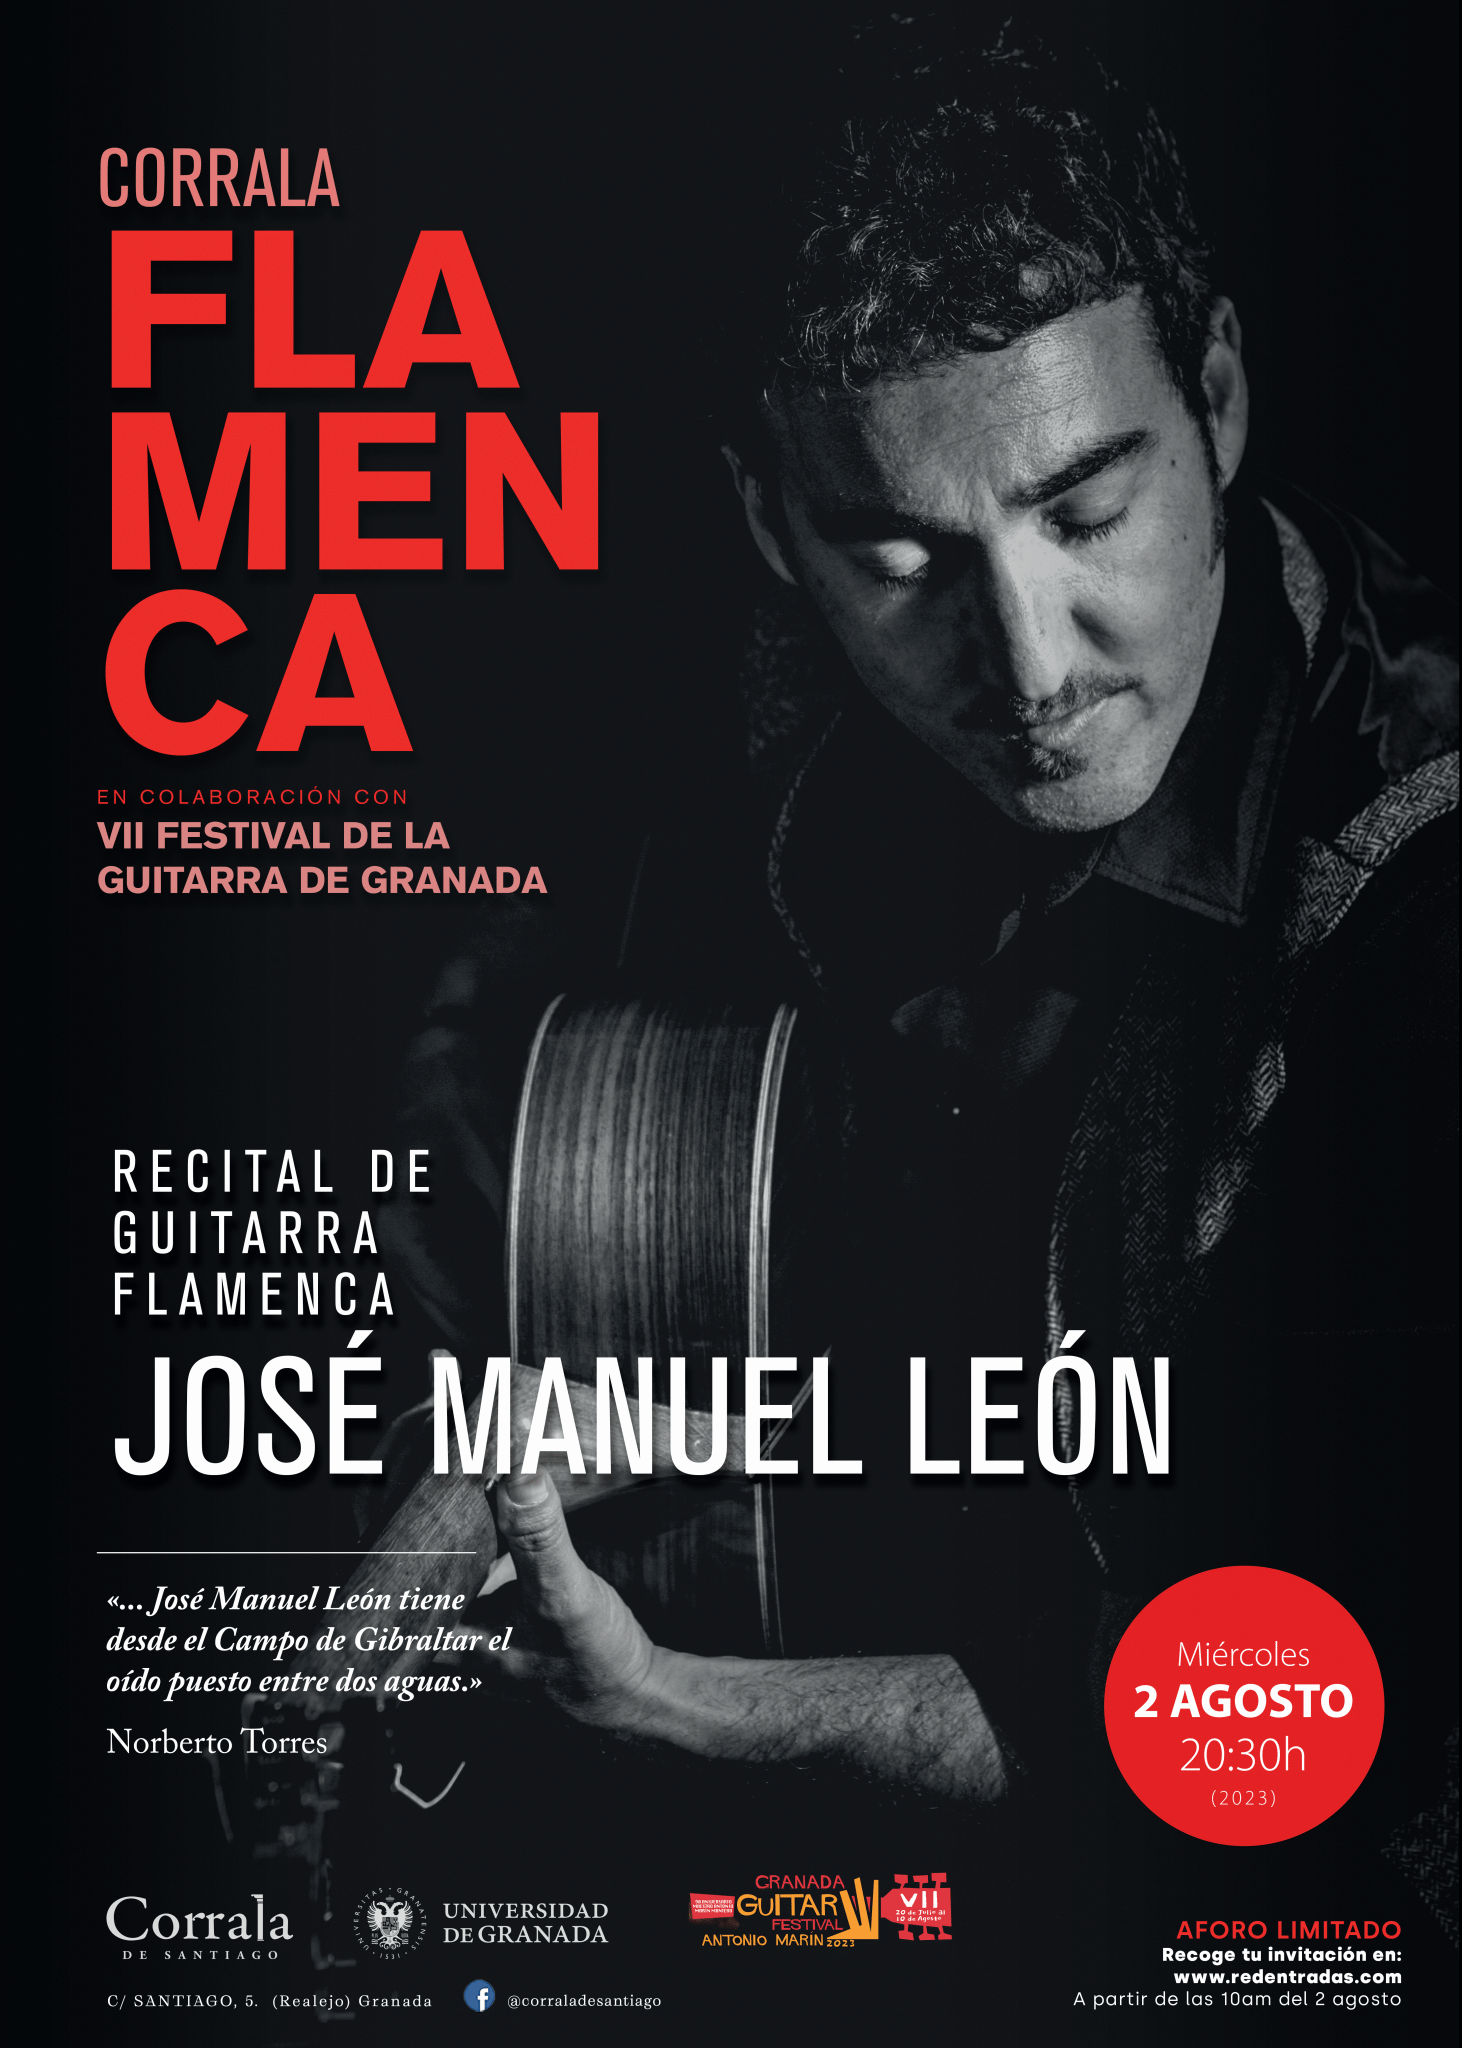 Dentro de la programación del Festival Internacional de la Guitarra, el algecireño José Manuel León dará un concierto de guitarra flamenca el día 2 de agosto a las 20:30 horas.